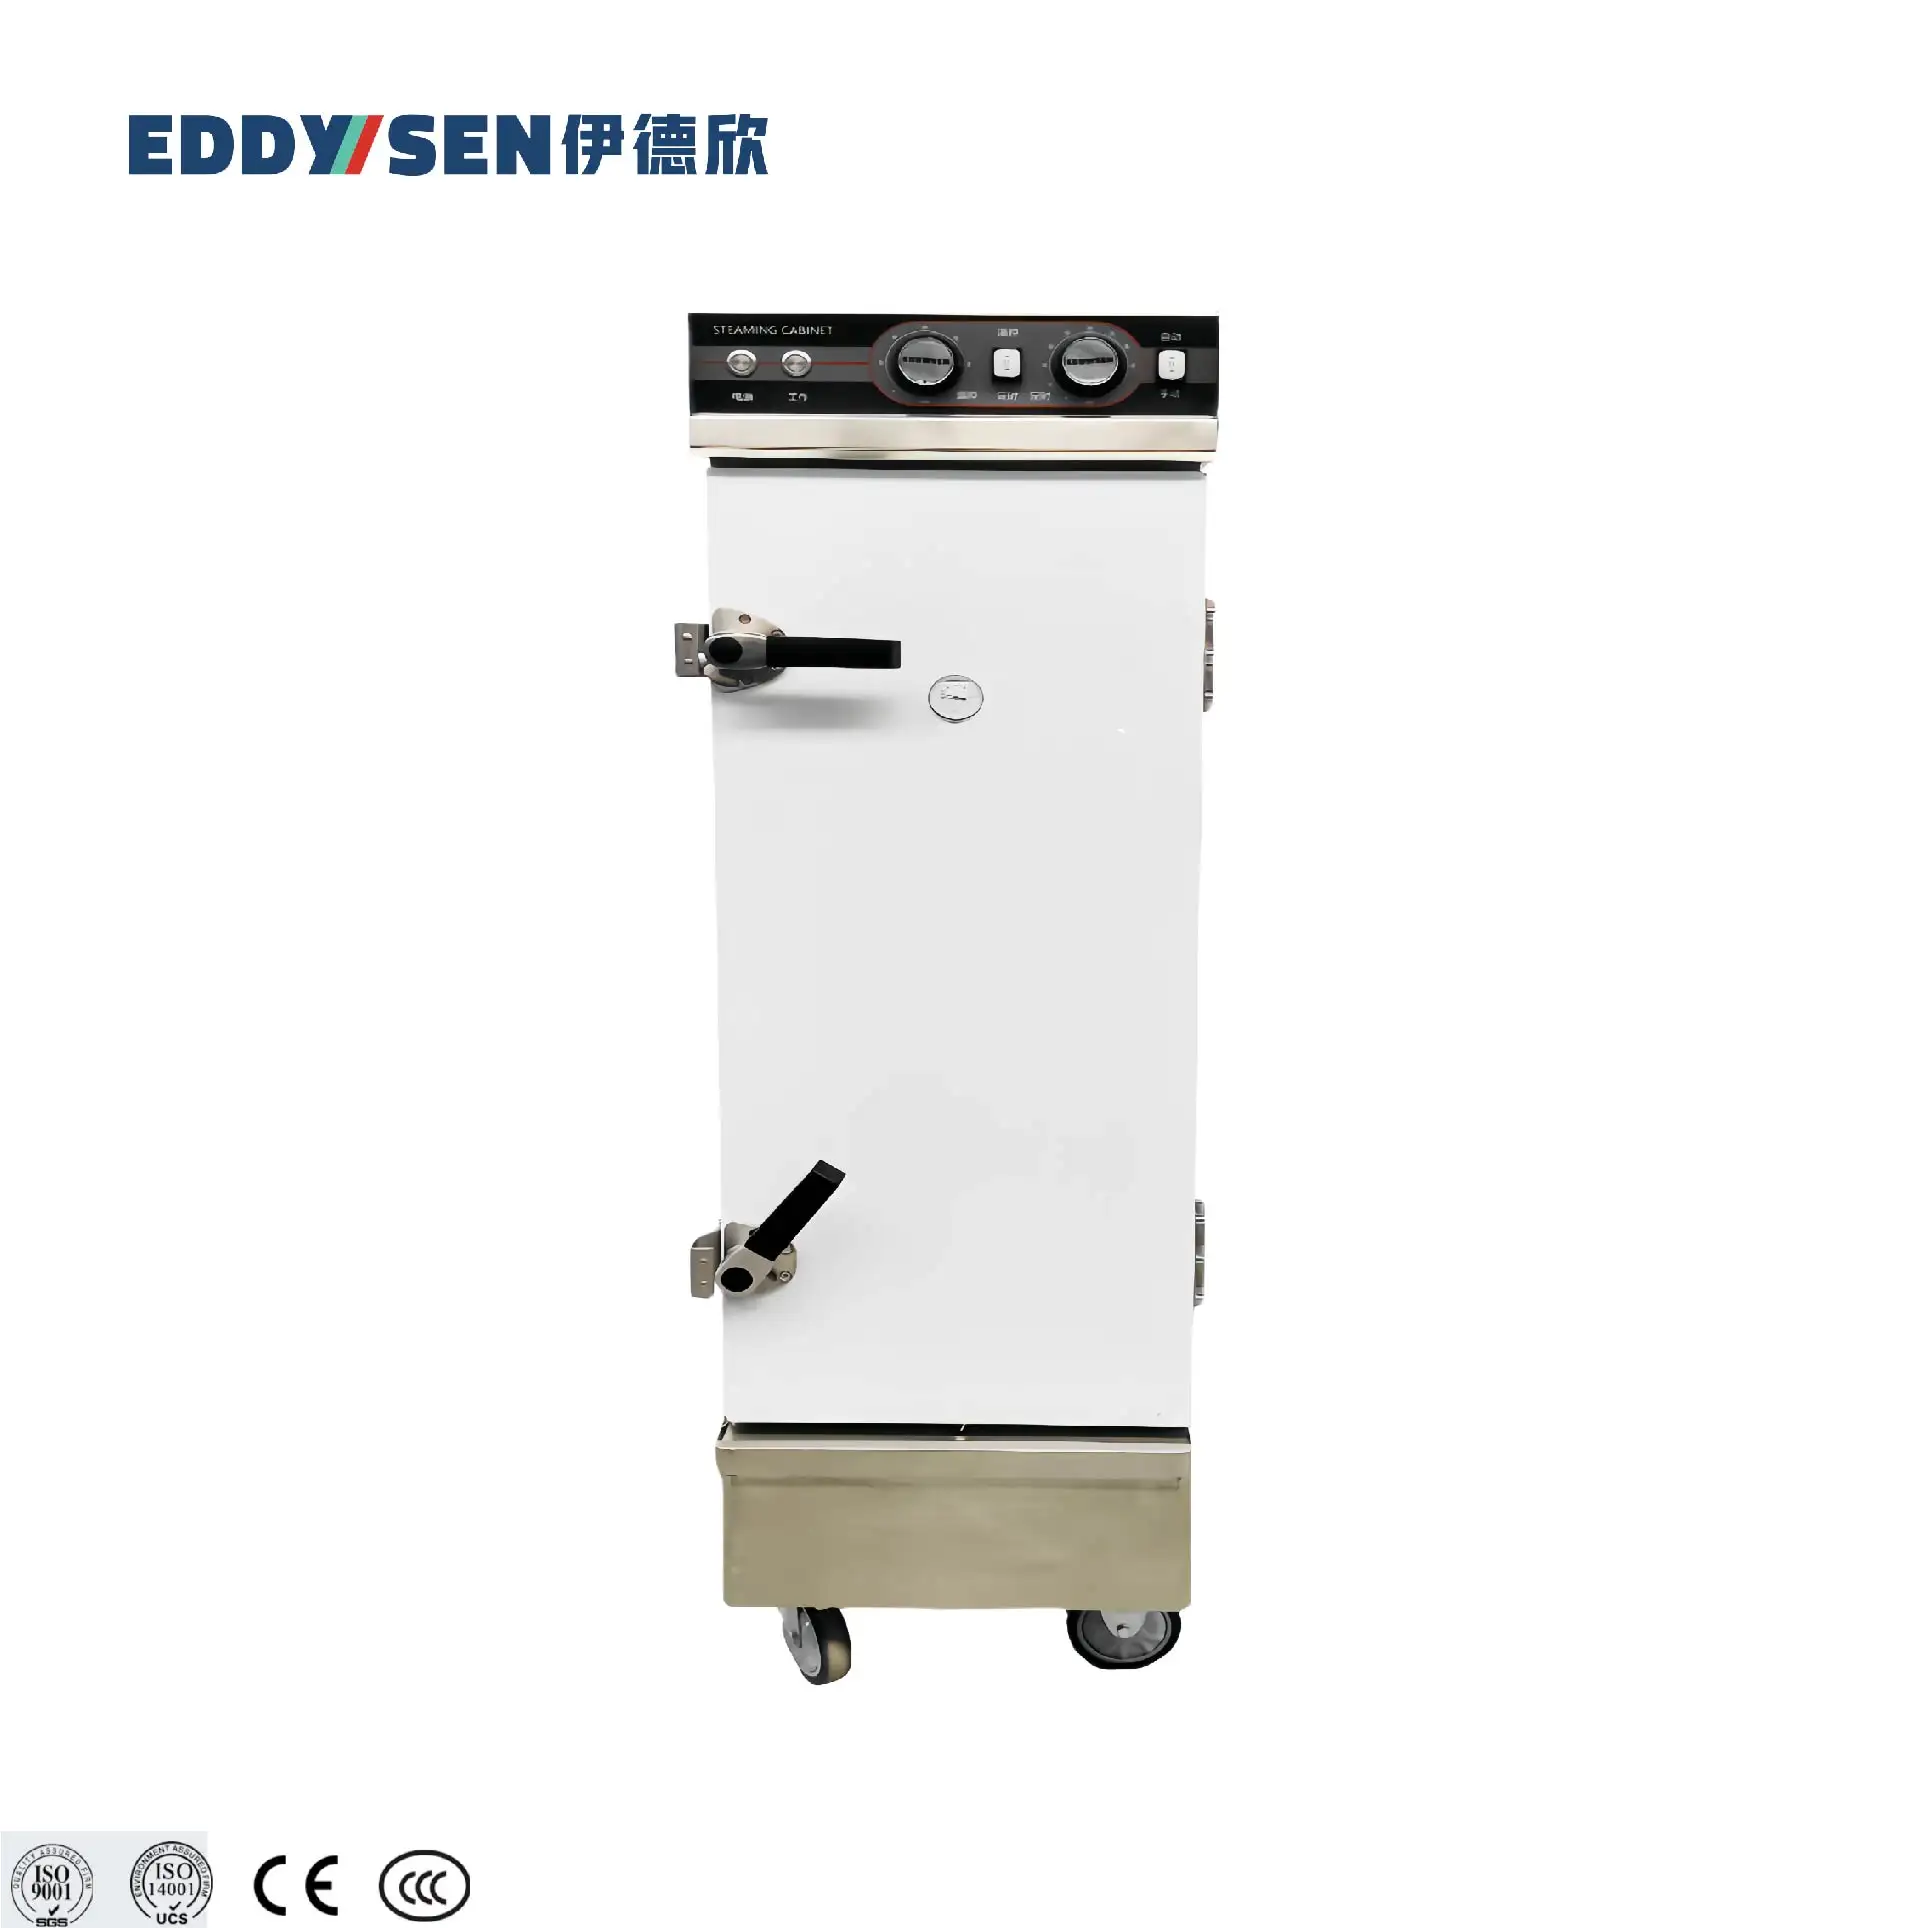 8トレイ自動商用電気蒸気キャビネット食品蒸し器炊飯器-究極の調理ソリューション